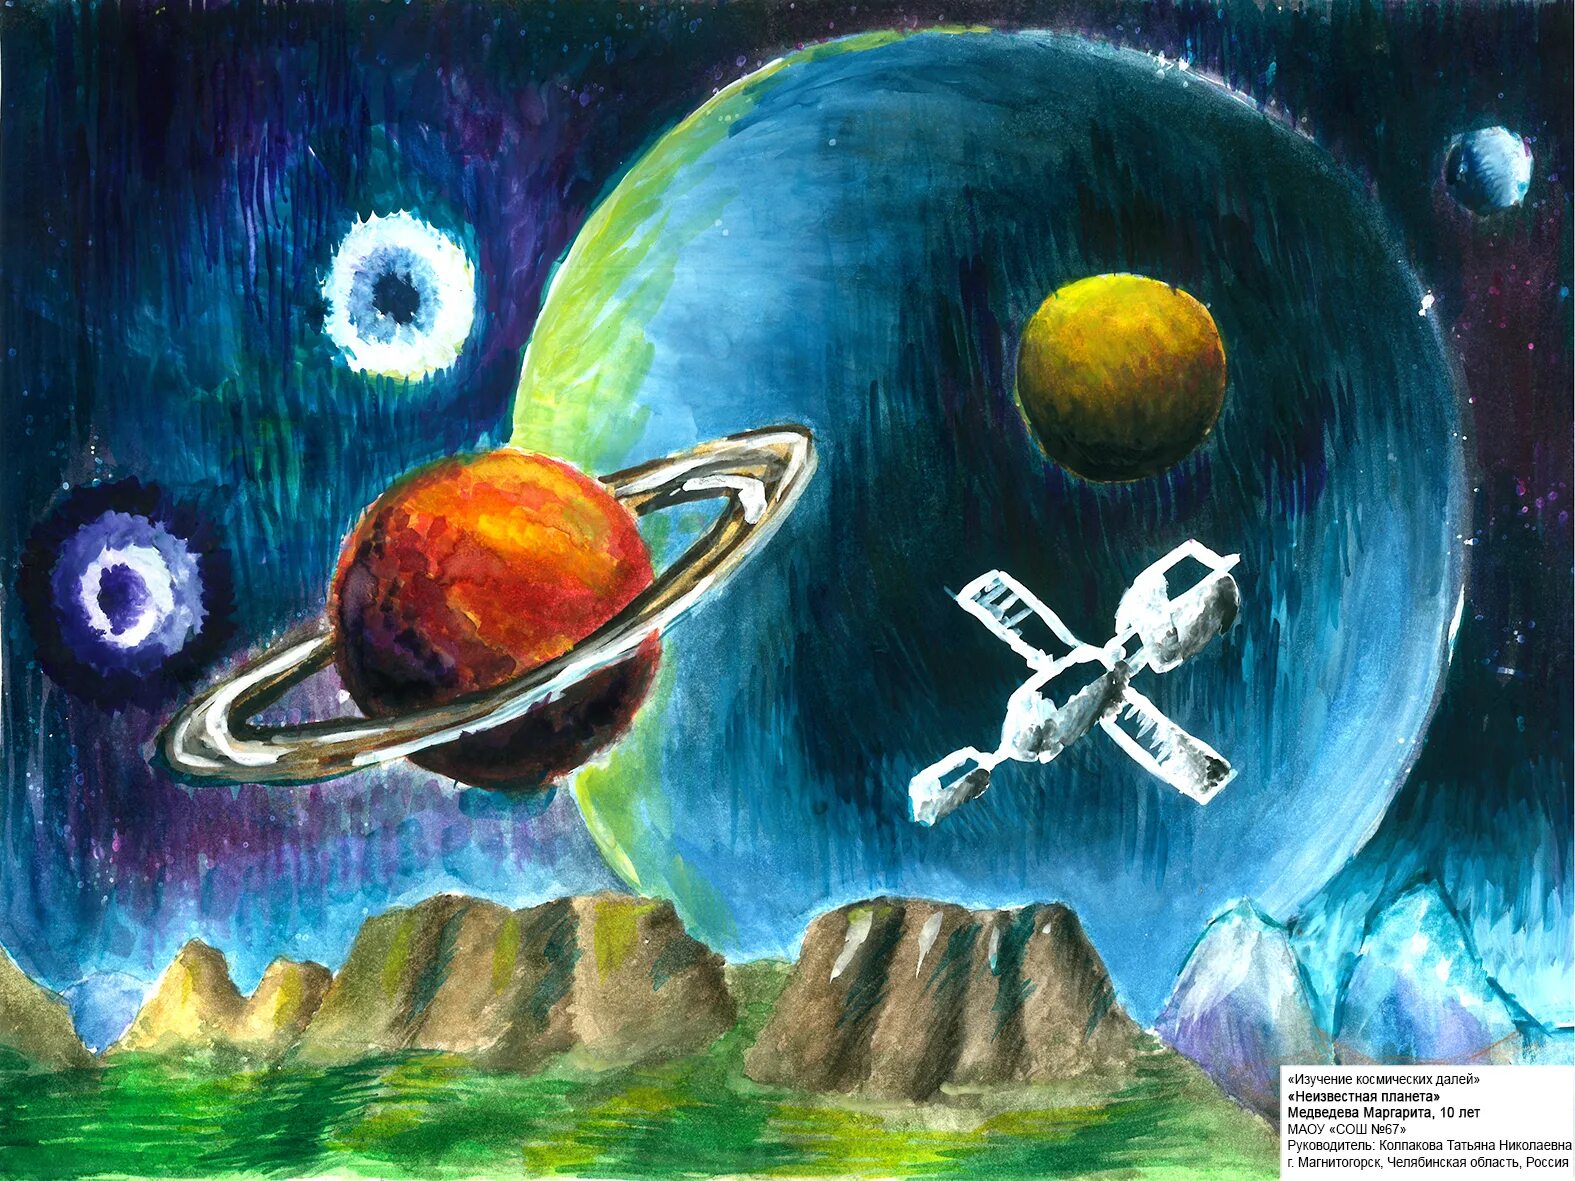 Название работ про космос. Плакета на тему космос. Плакат на тему космос. Плакат на космическую тему. Рисунок на тему космос.